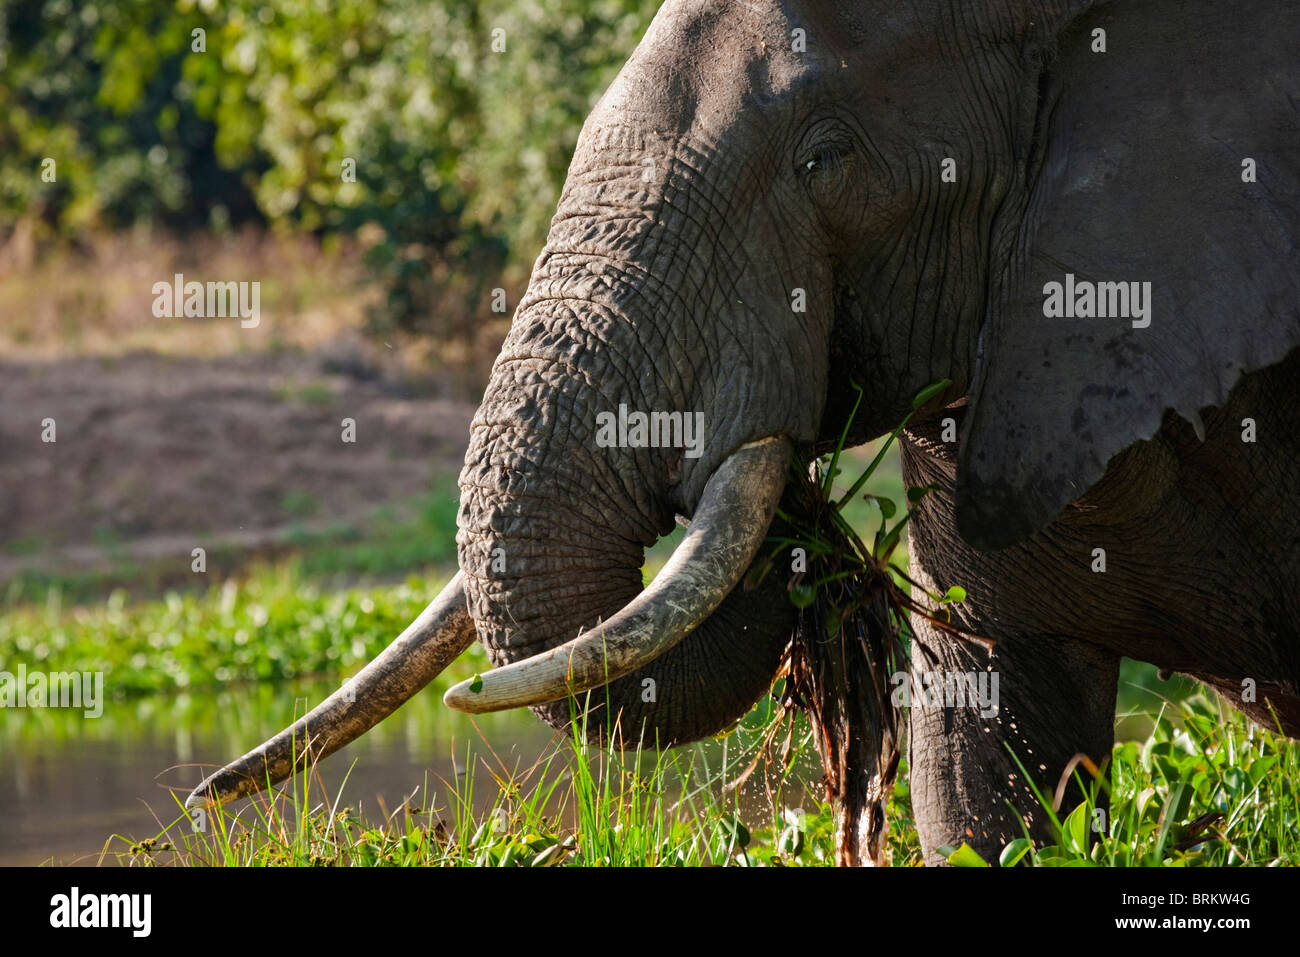 Bull éléphant debout dans un trou d'arrosage se nourrissant de jacinthe d'eau Banque D'Images